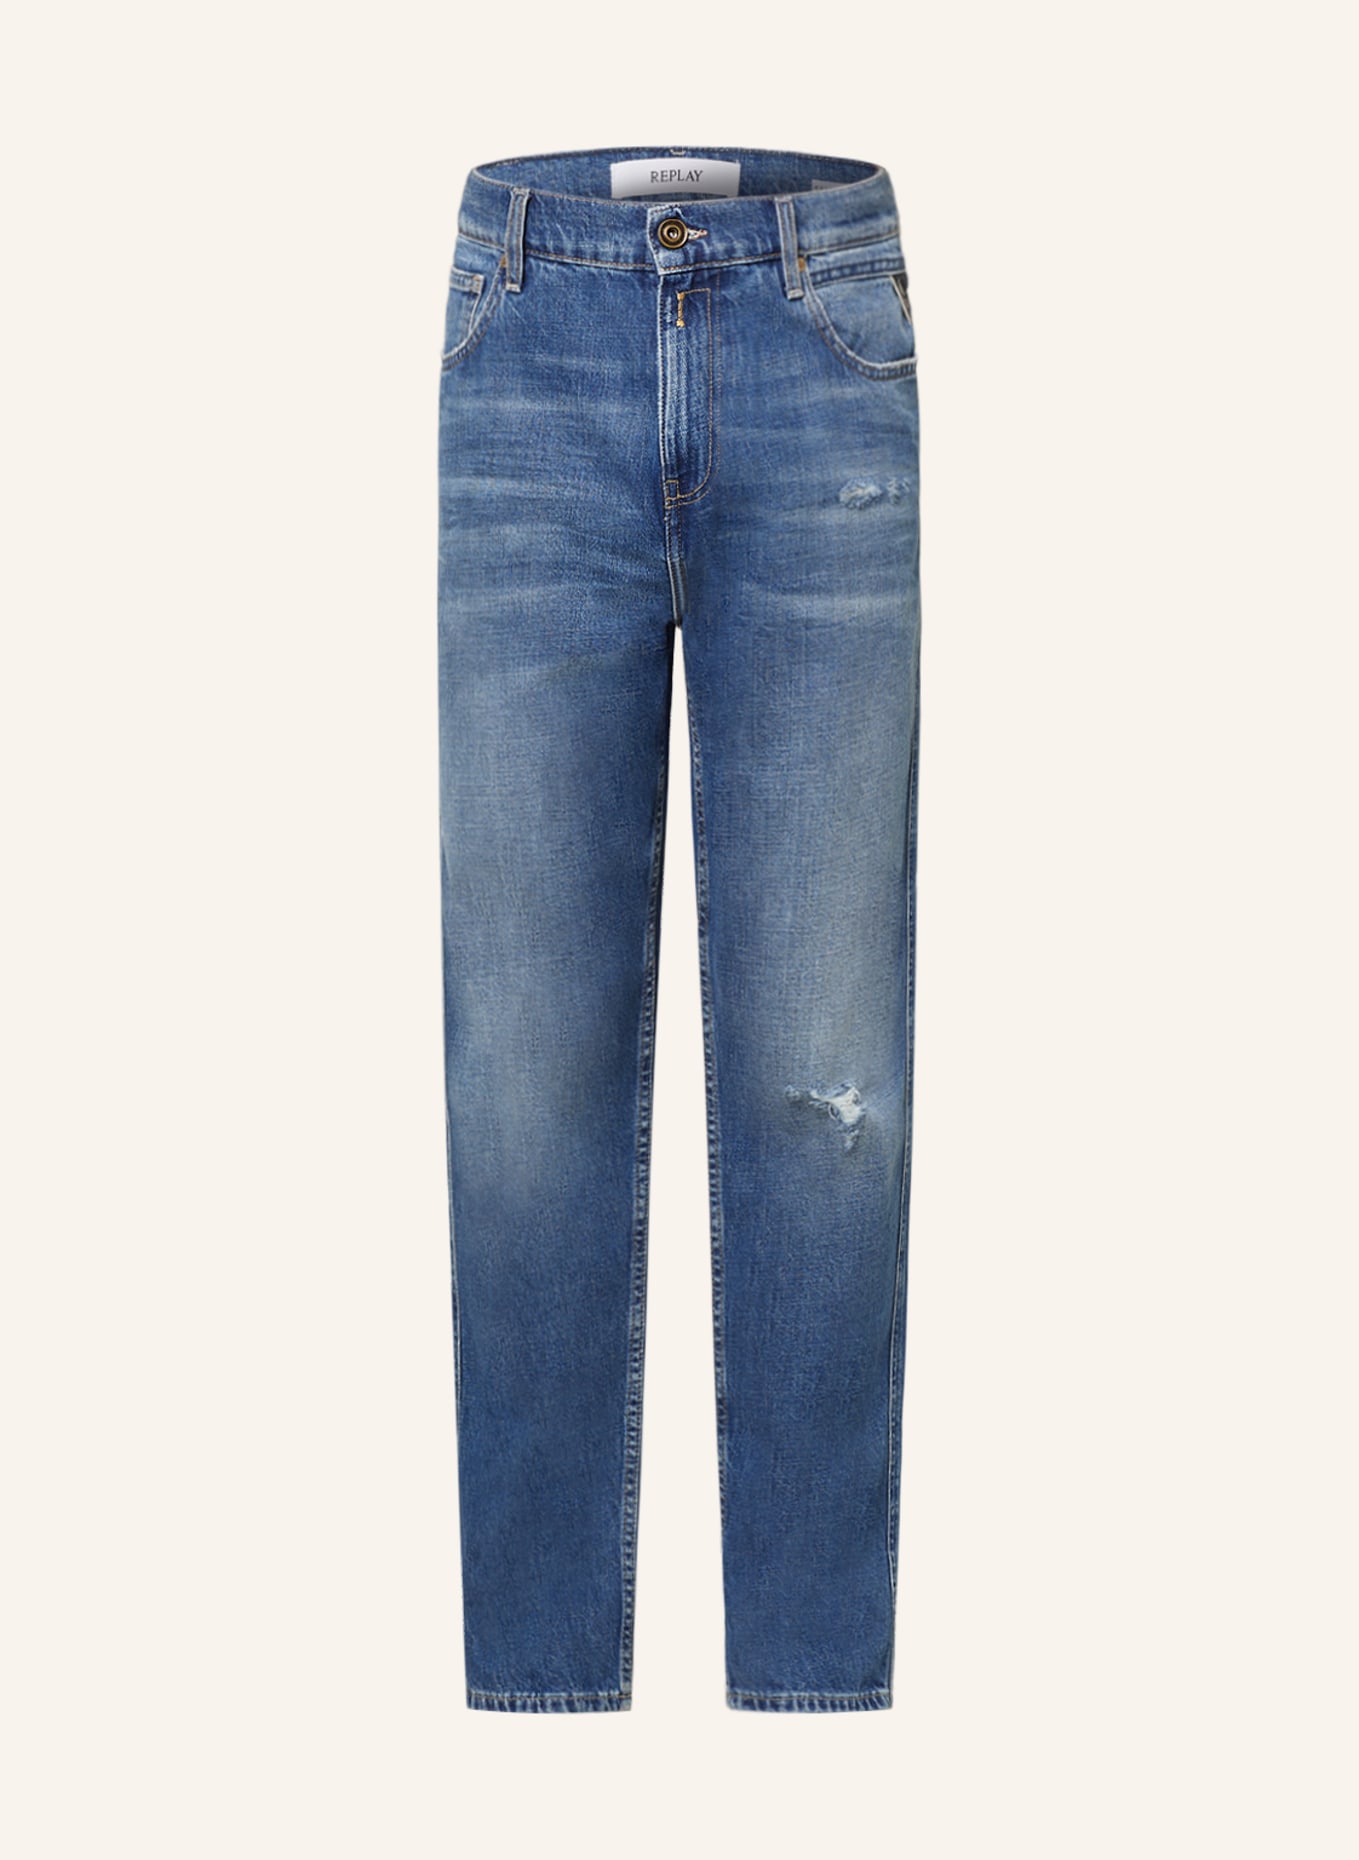 REPLAY Jeans SANDOT Tapered Fit, Farbe: 009 MEDIUM BLUE (Bild 1)